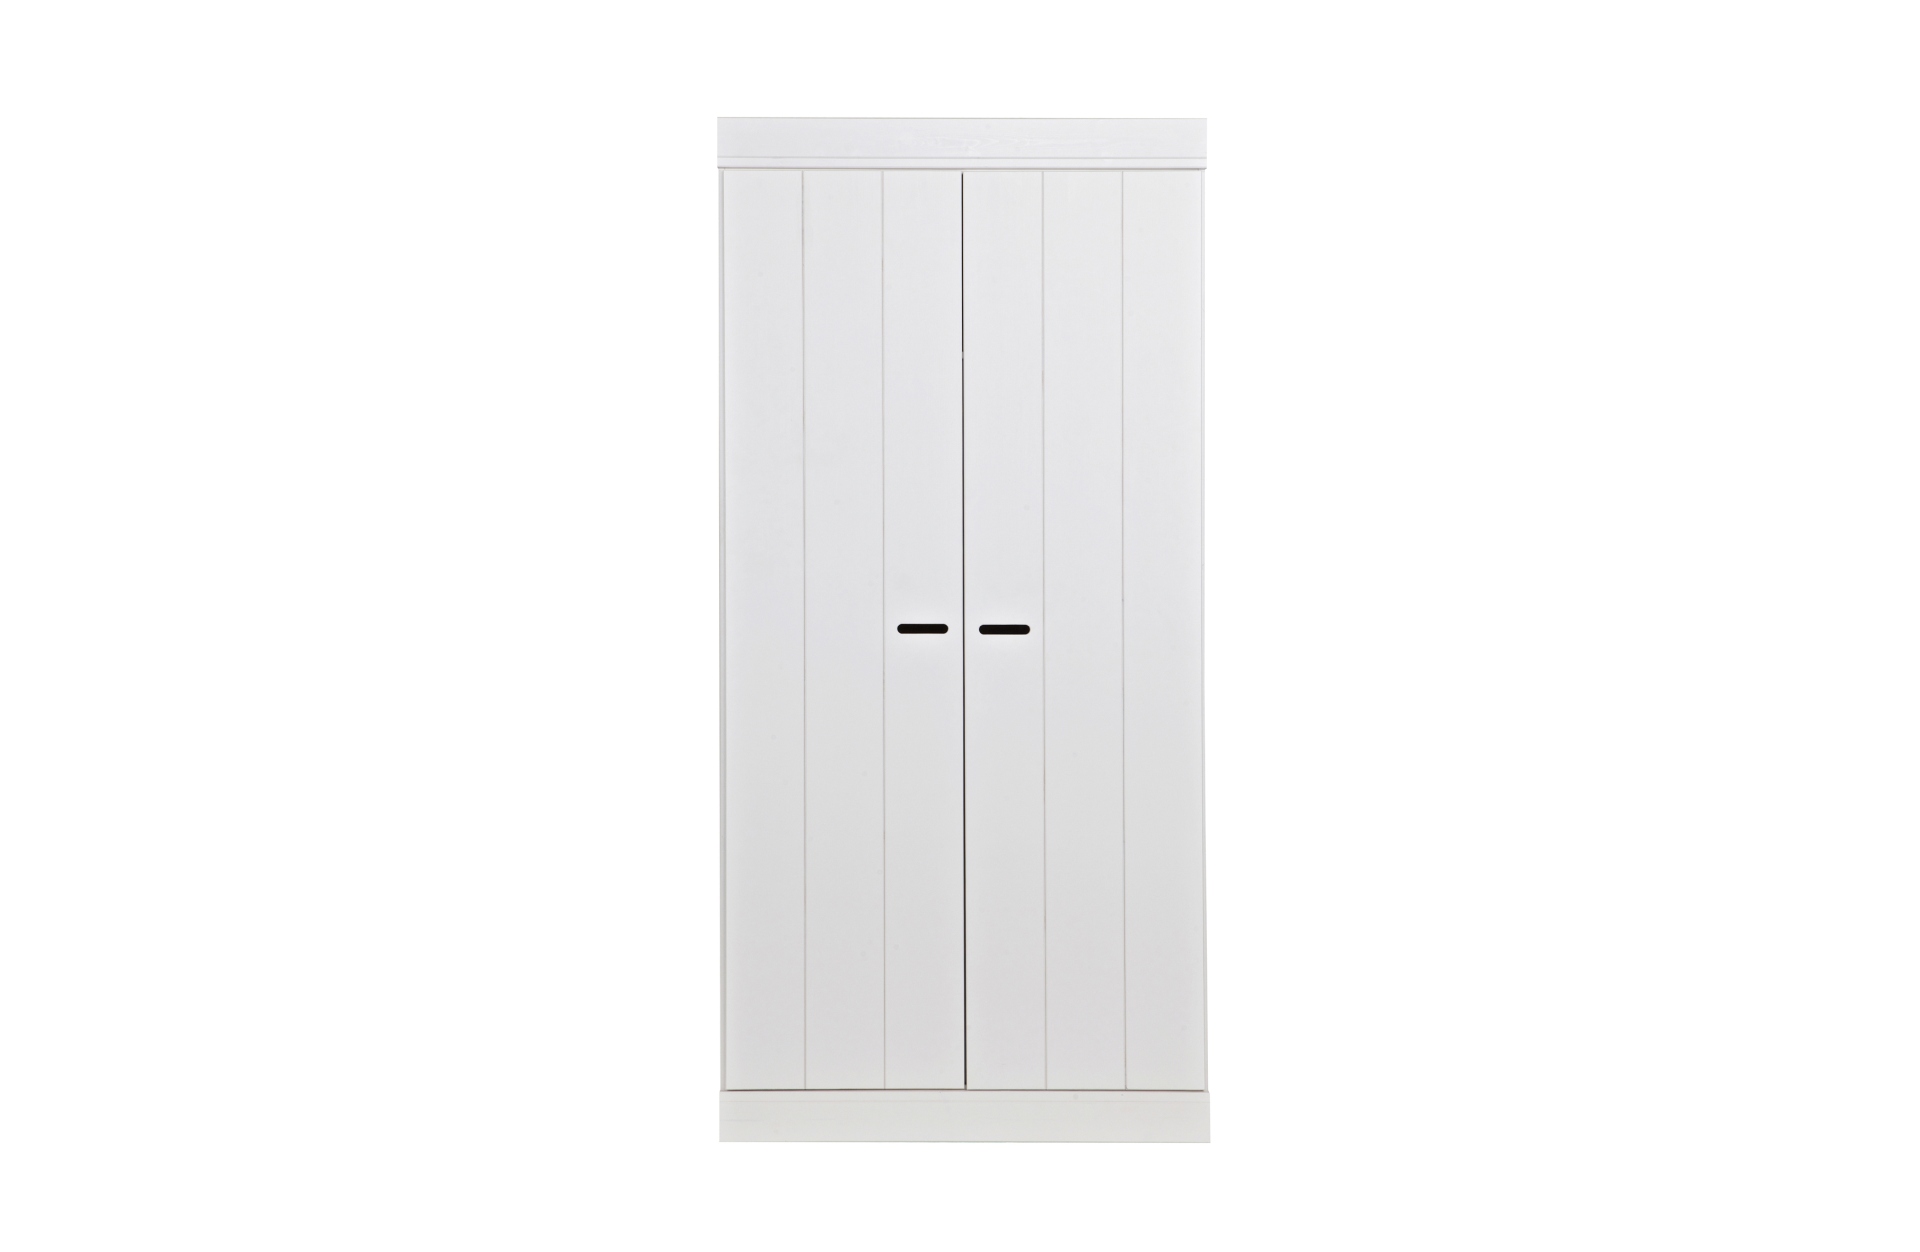 Der schlichte Kleiderschrank Connect wurde aus Kiefernholz gefertigt. Hinter den zwei Türen befindet sich ausreichend Stauraum für diverse Kleidungsstücke. Der Schrank hat einen weißen Farbton.